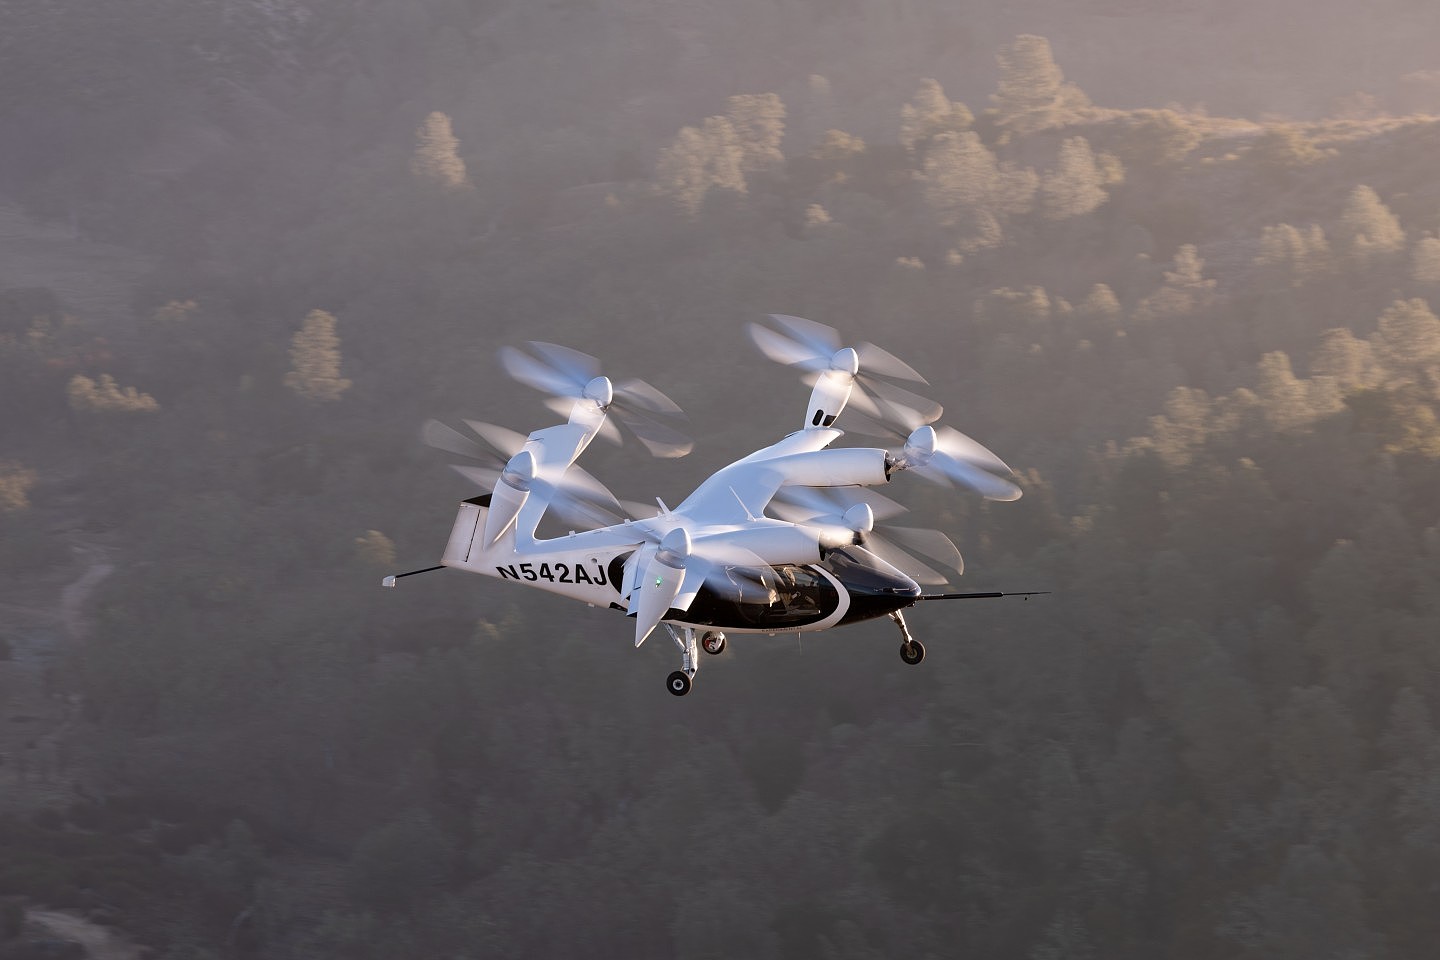 Joby发布eVTOL完整飞行轮廓视频并碳信用交易系统计划 - 8